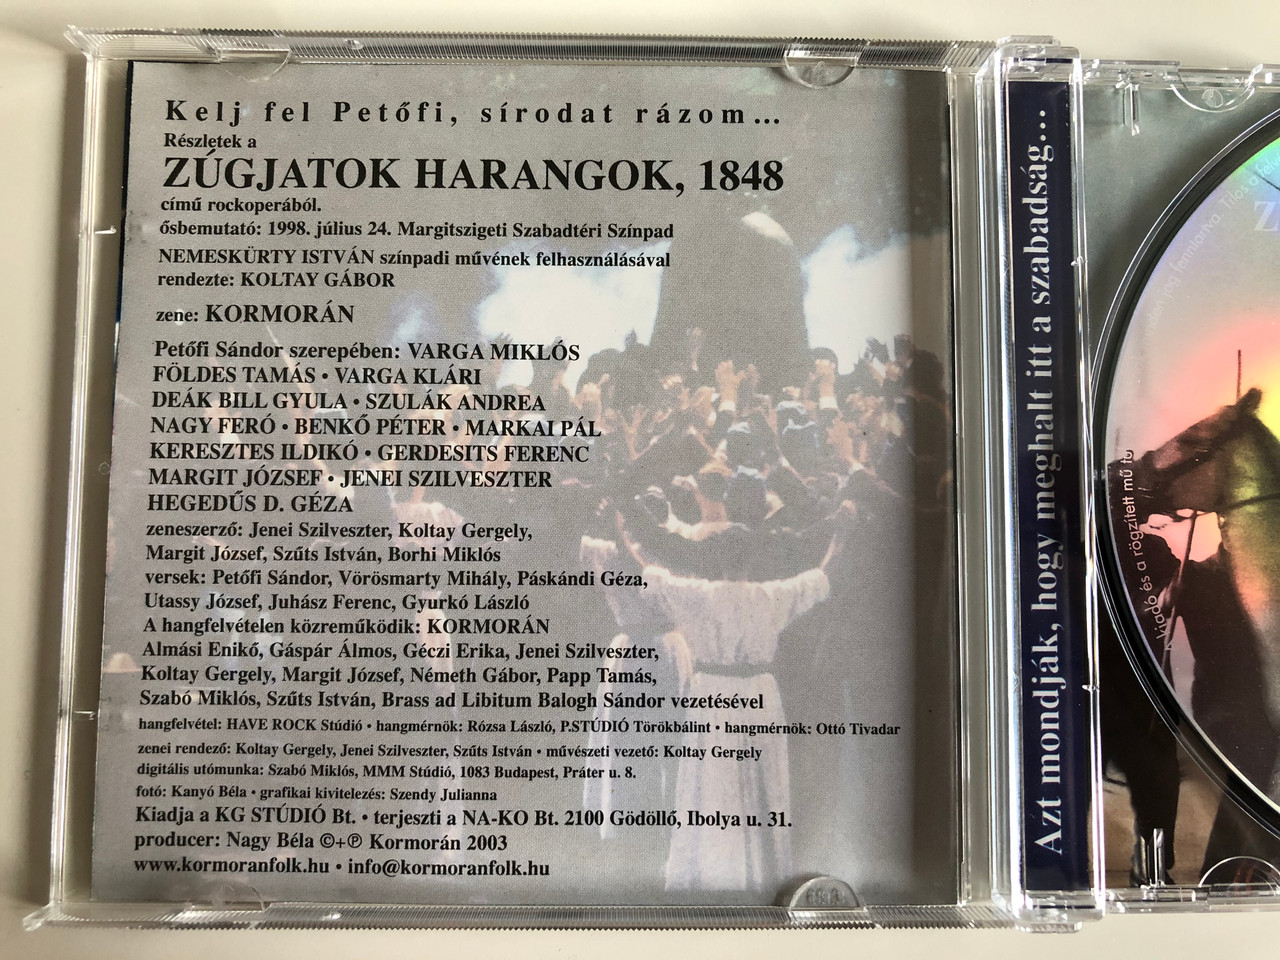 Kelj Fel Petőfi - Részletek a Zúgjatok Harangok, 1848 című Rockoperából -  Kormorán ‎/ Kormoran Audio CD 2003 - bibleinmylanguage